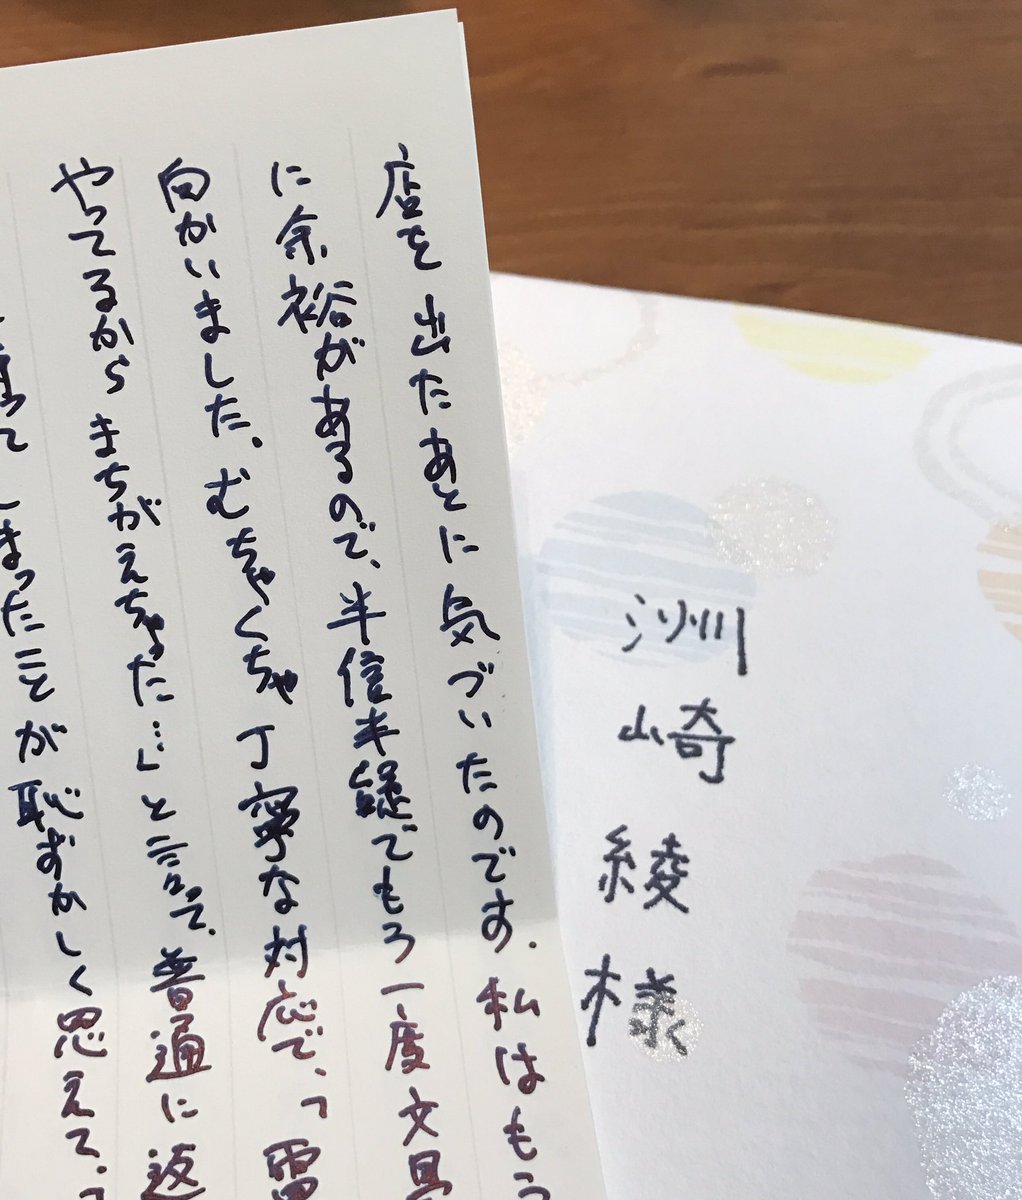 洲崎綾 در توییتر この方の手紙を読むたびに 昔美術館で見た司馬遼太郎先生の筆跡に似ているなぁ と思う 司馬遼太郎先生から手紙 をもらったらこんななのかしら と新しい楽しみ方を発見した くれた人ごめんね笑 ブルーブラックの万年筆 浪漫があるよね 素敵